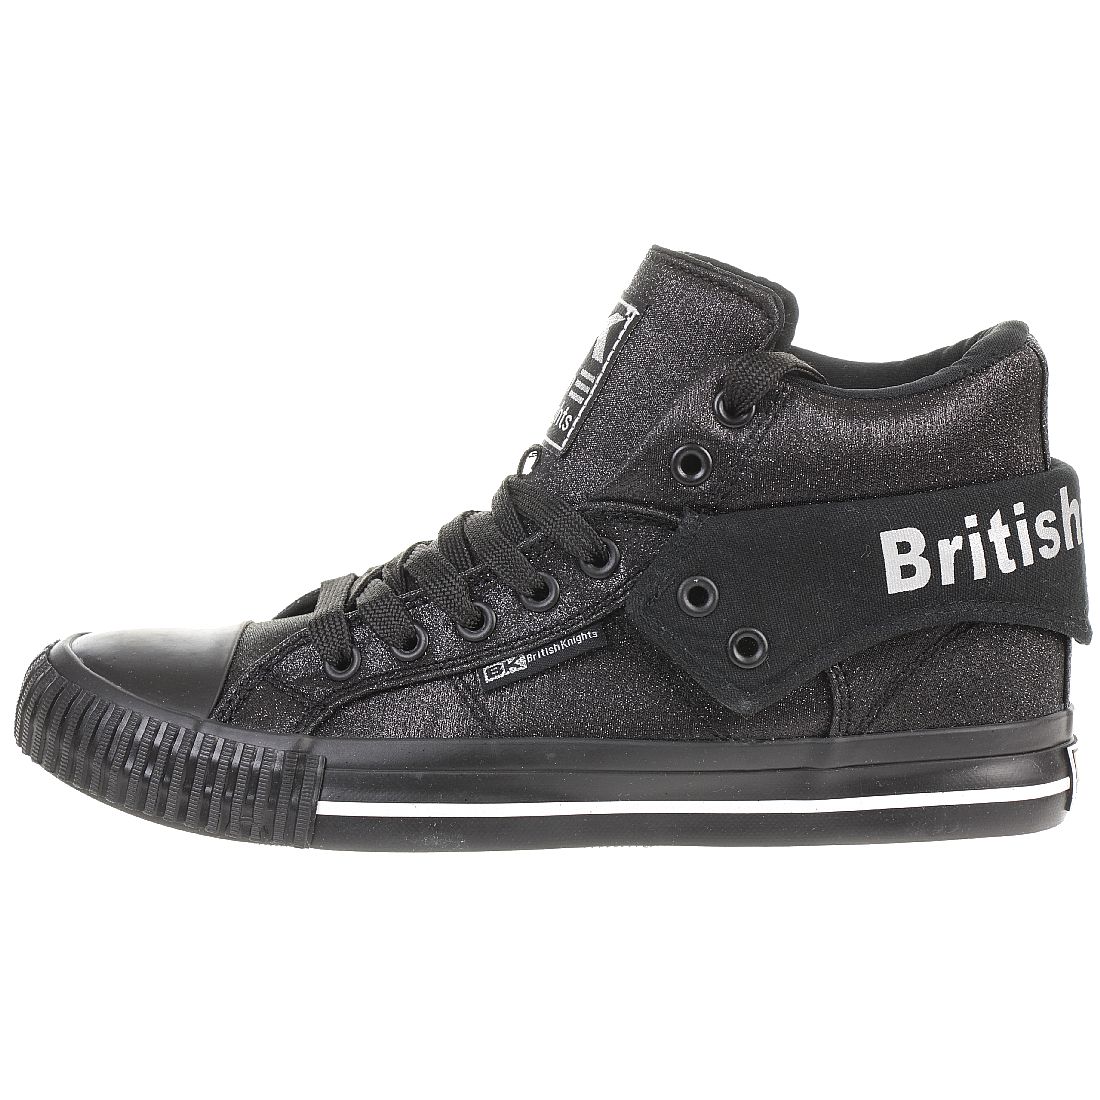 British Knights ROCO BK Damen Sneaker B43 3703 04 schwarz Glitzer Textil